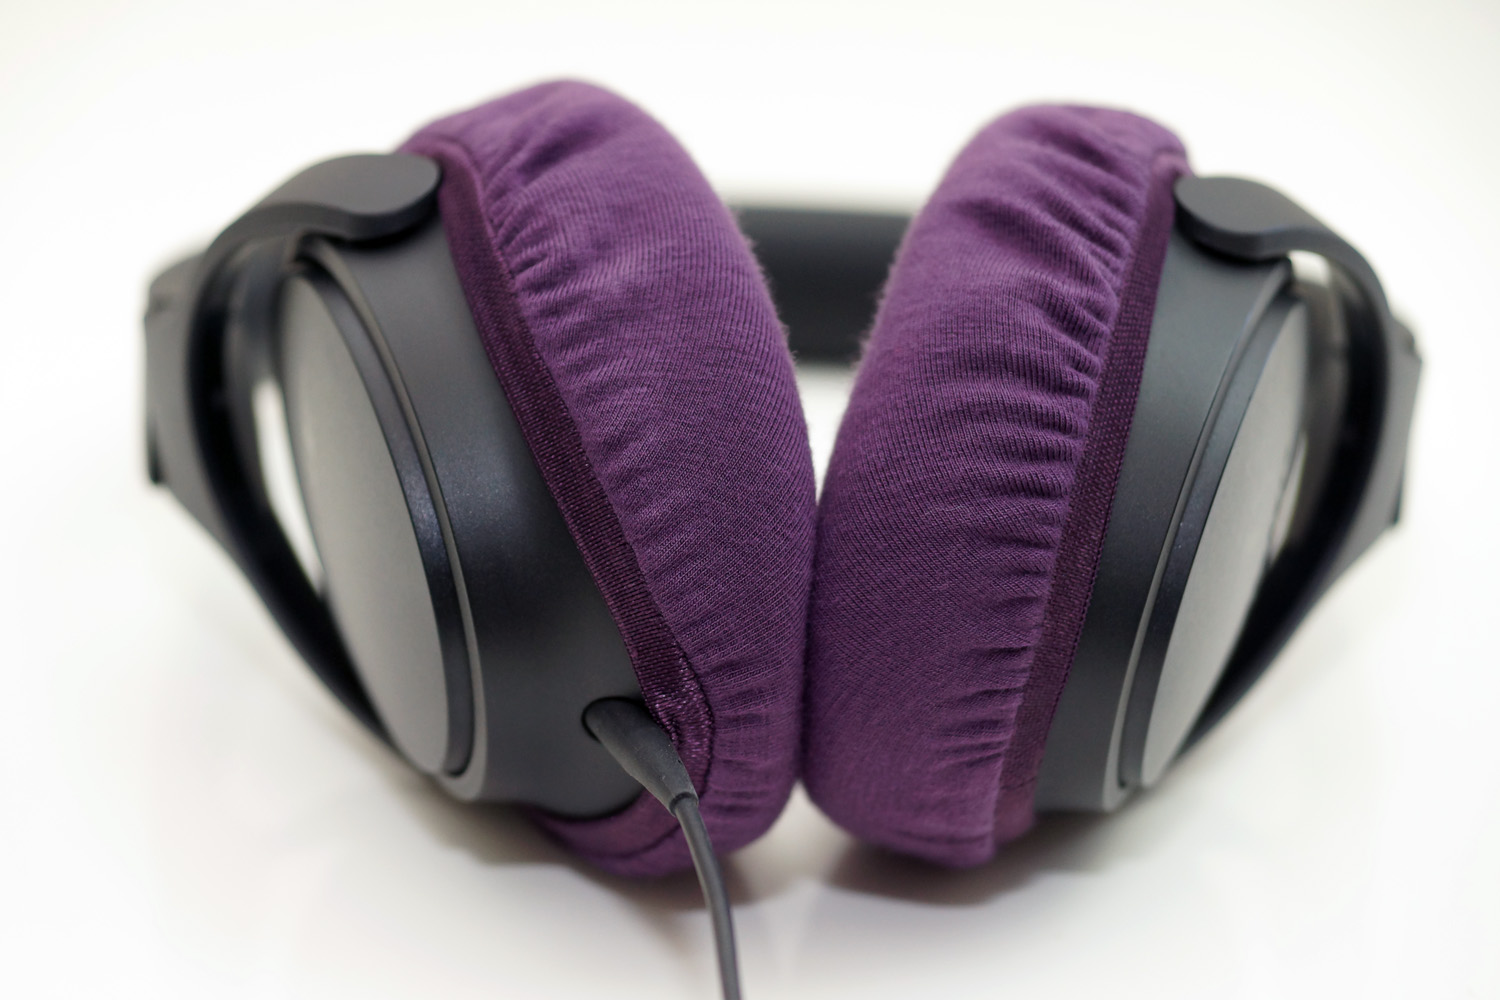 Bose SoundTrue around-ear headphones II のイヤーパッドへのmimimamoの対応